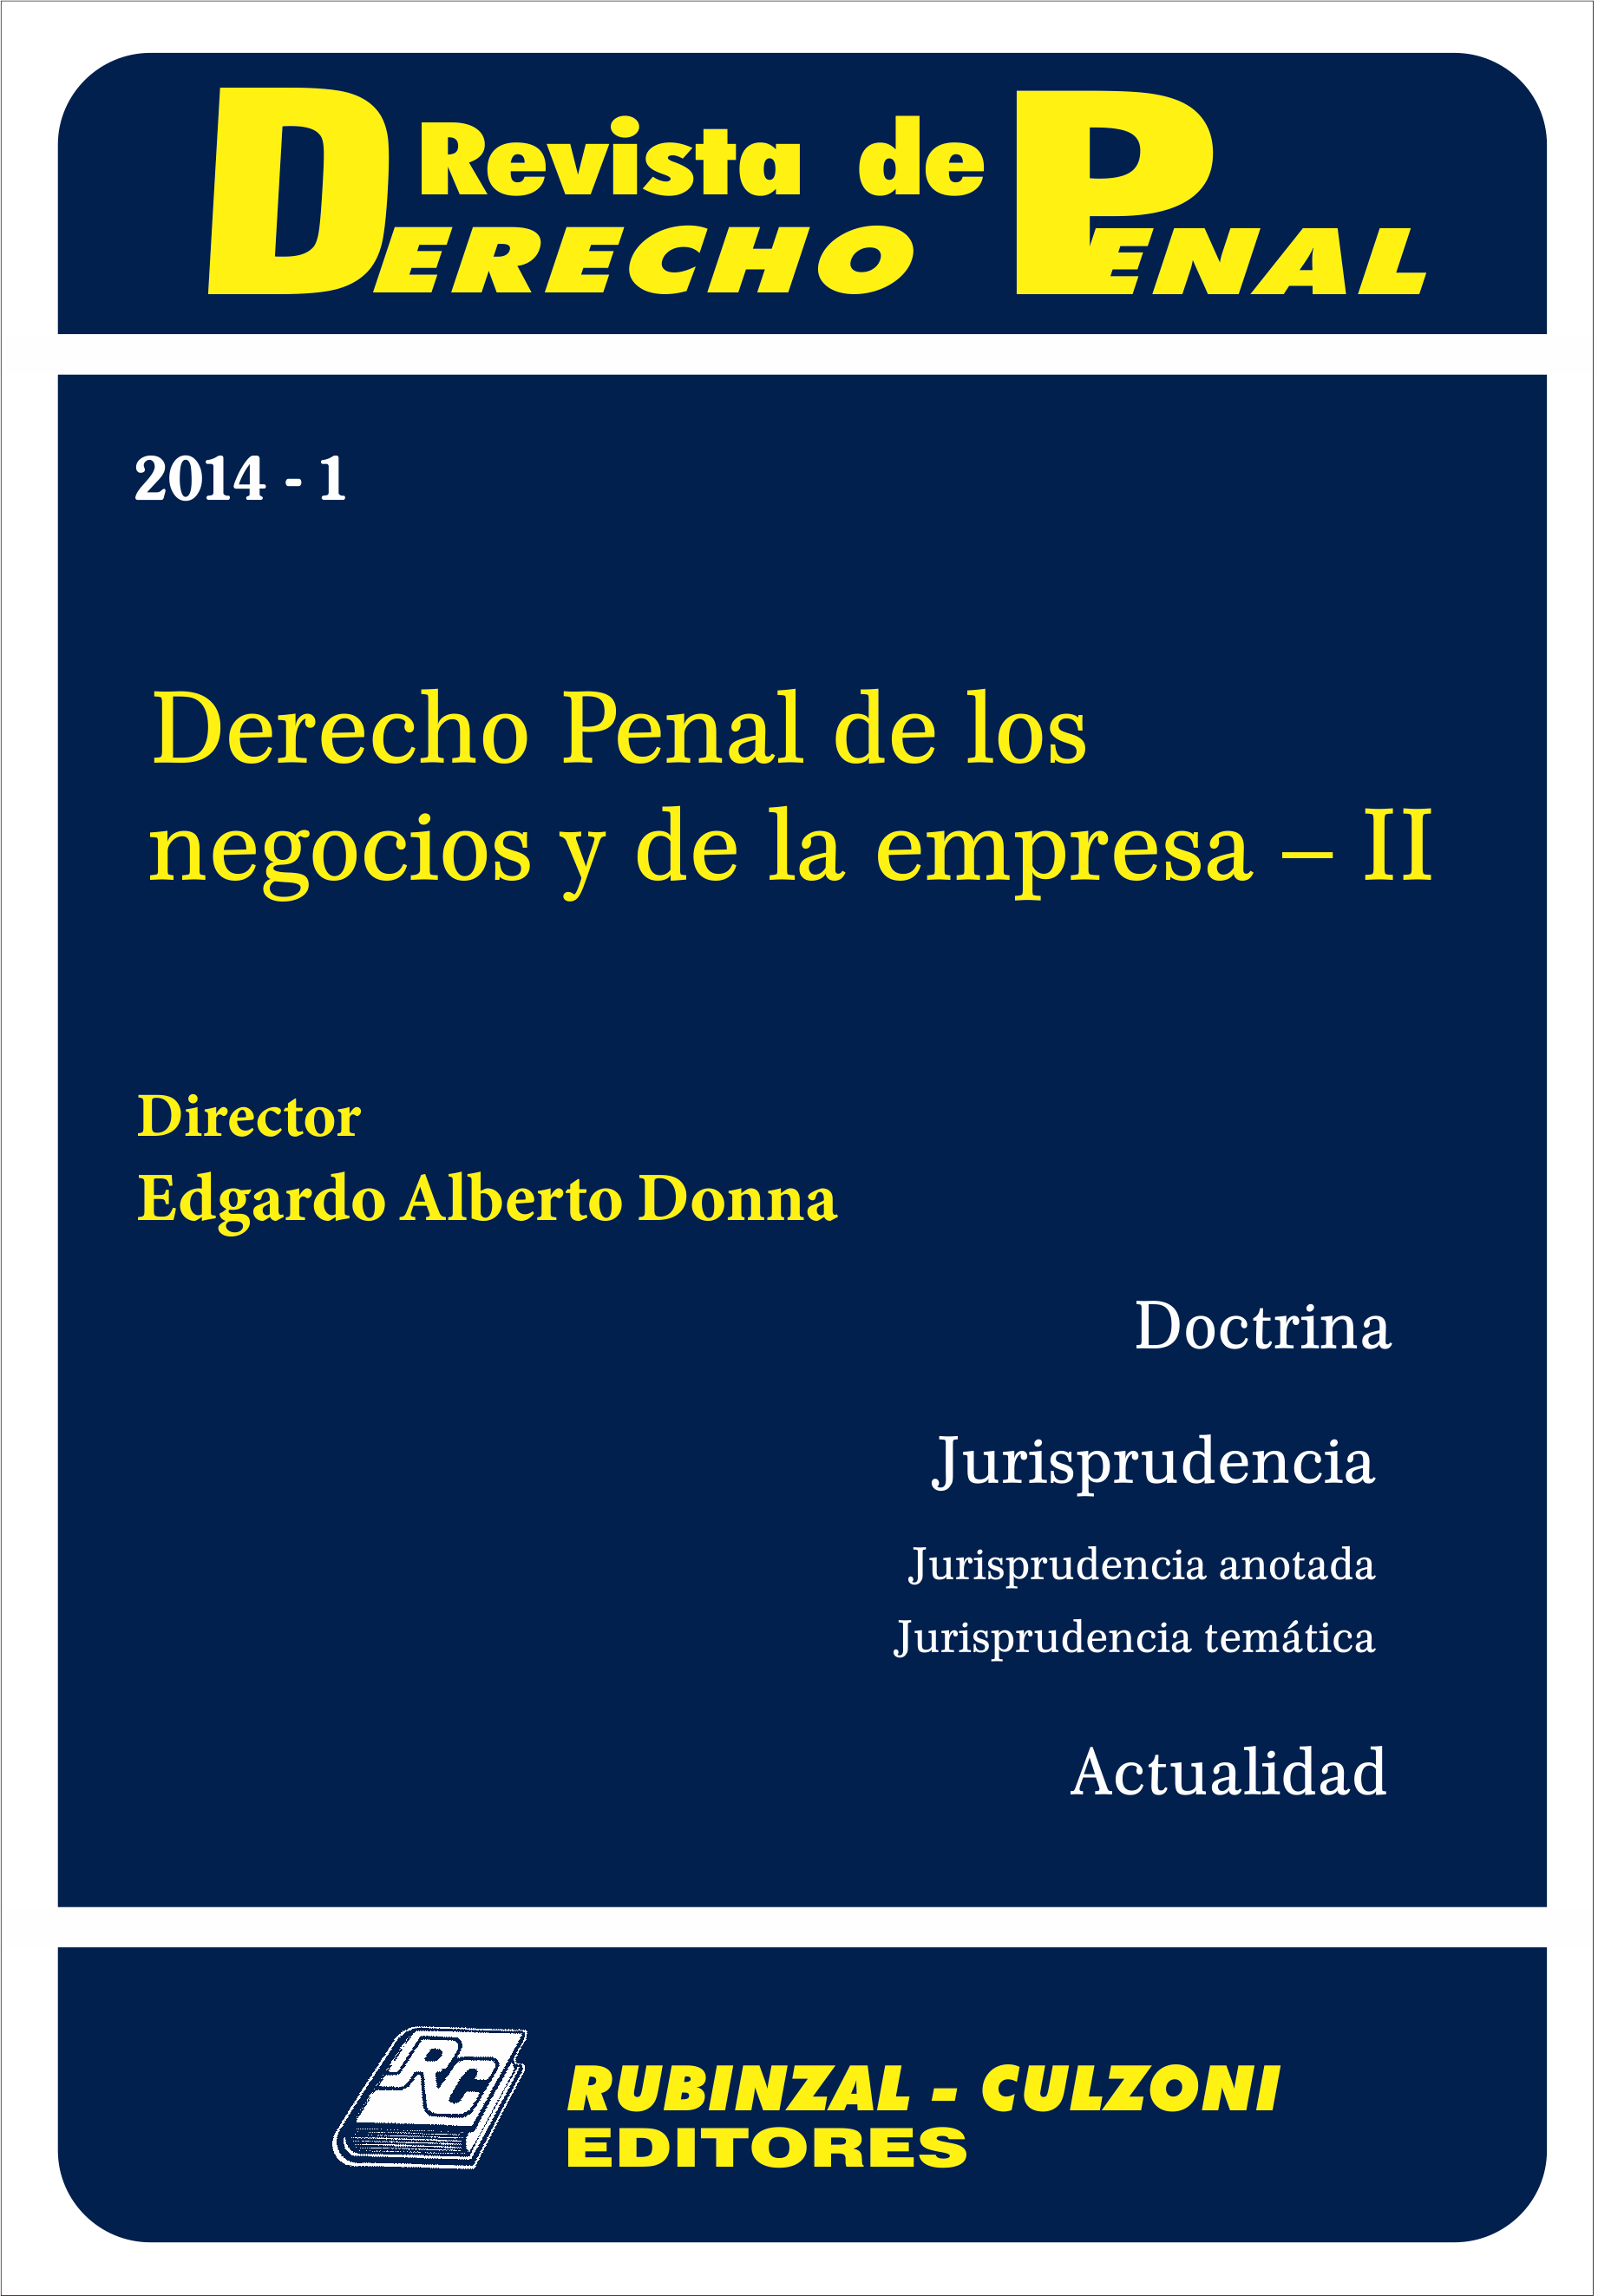 Revista de Derecho Penal - Derecho Penal de los negocios y de la empresa - II. [2014-1]